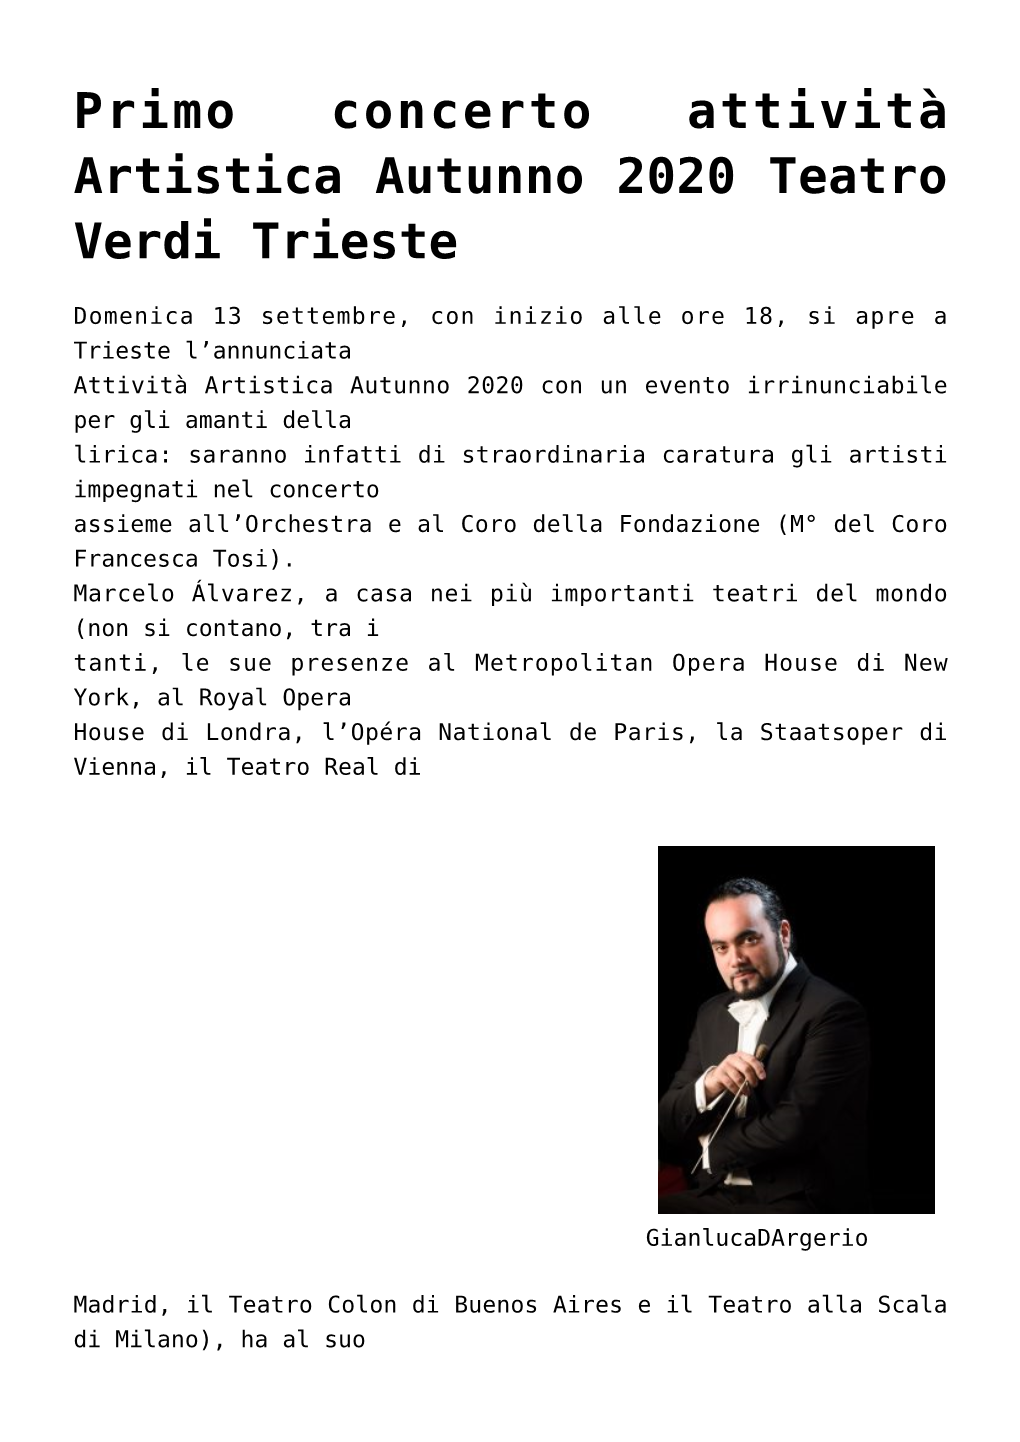 Primo Concerto Attività Artistica Autunno 2020 Teatro Verdi Trieste